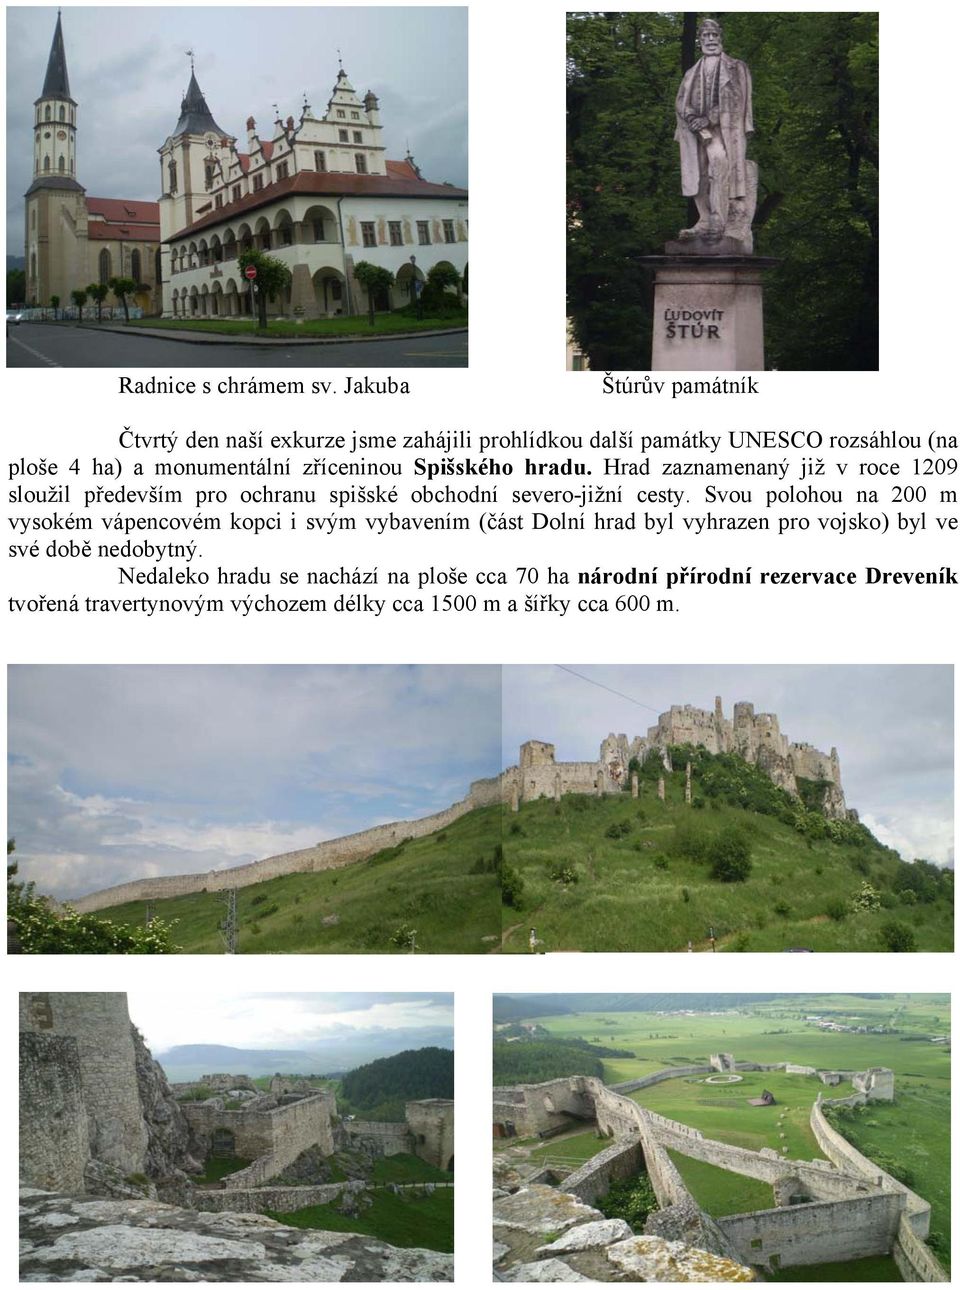 zříceninou Spišského hradu. Hrad zaznamenaný již v roce 1209 sloužil především pro ochranu spišské obchodní severo-jižní cesty.